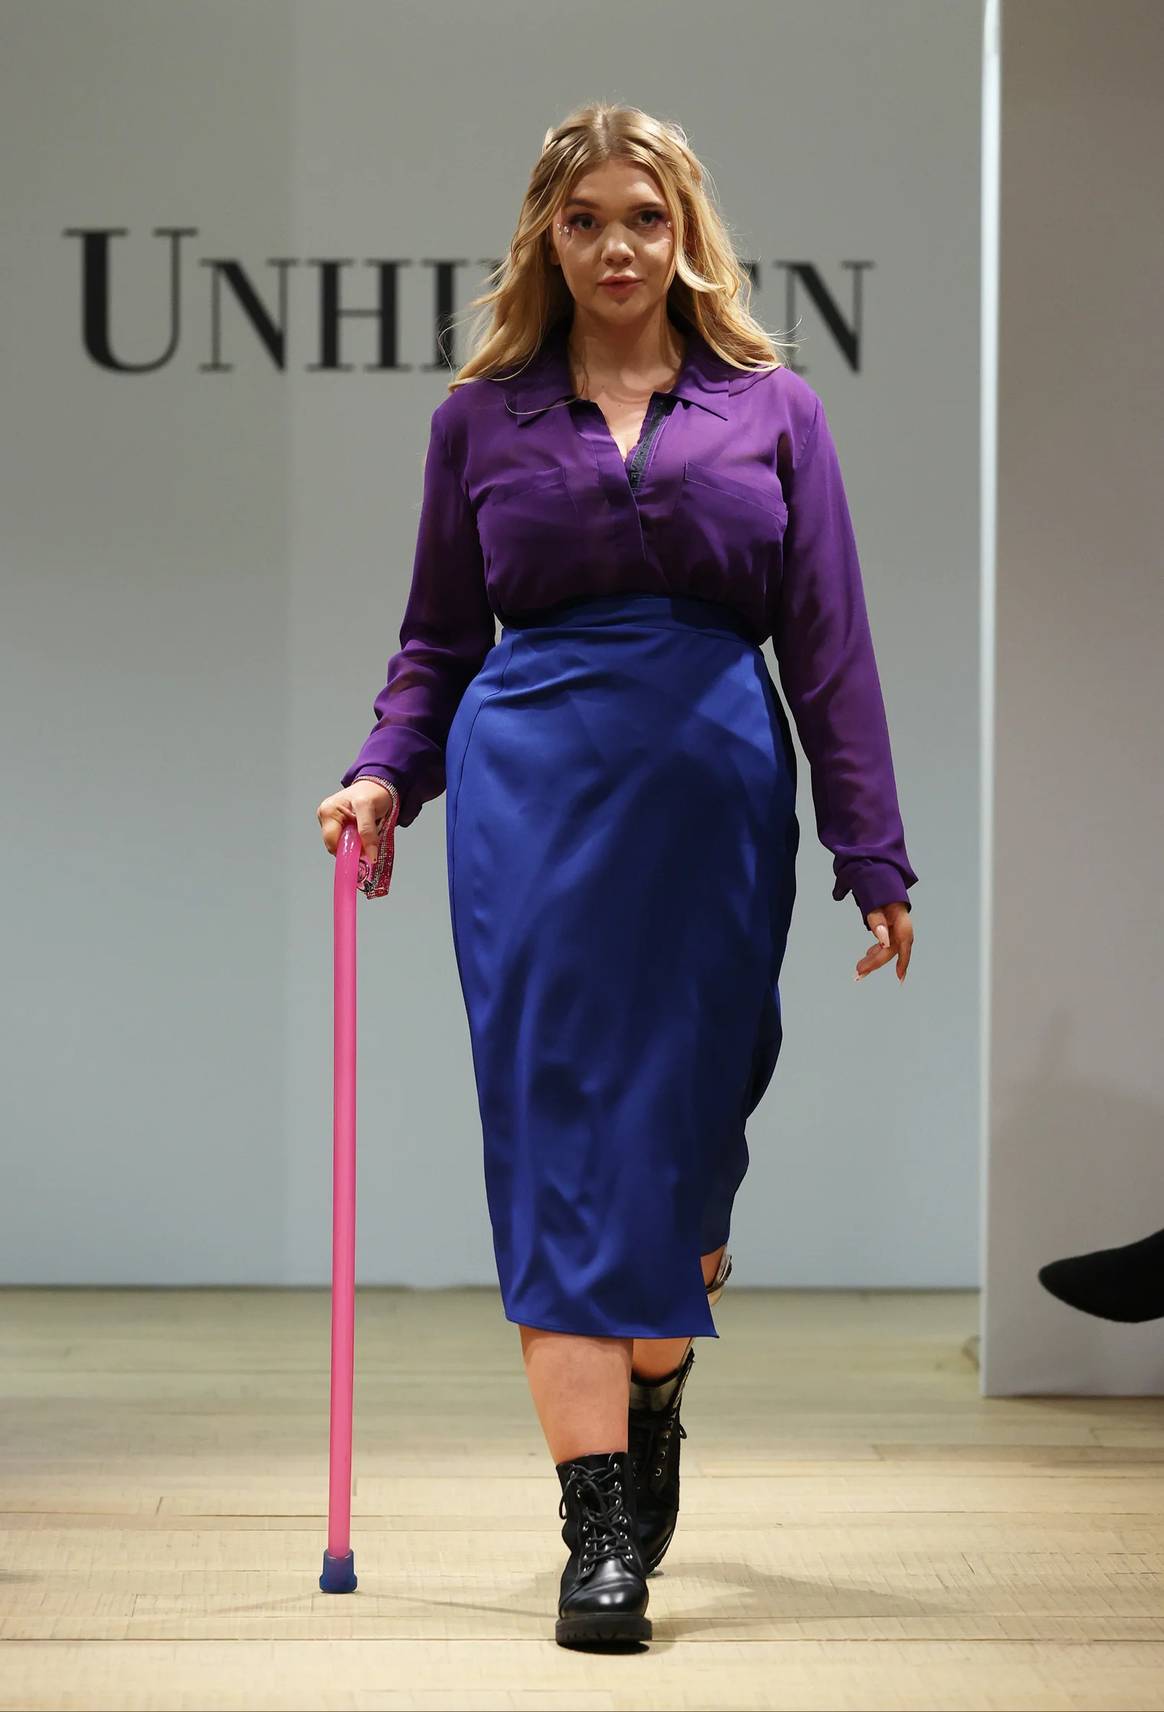 Modelo con bastón en falda cruzada en el show Unhidden el 23 de febrero